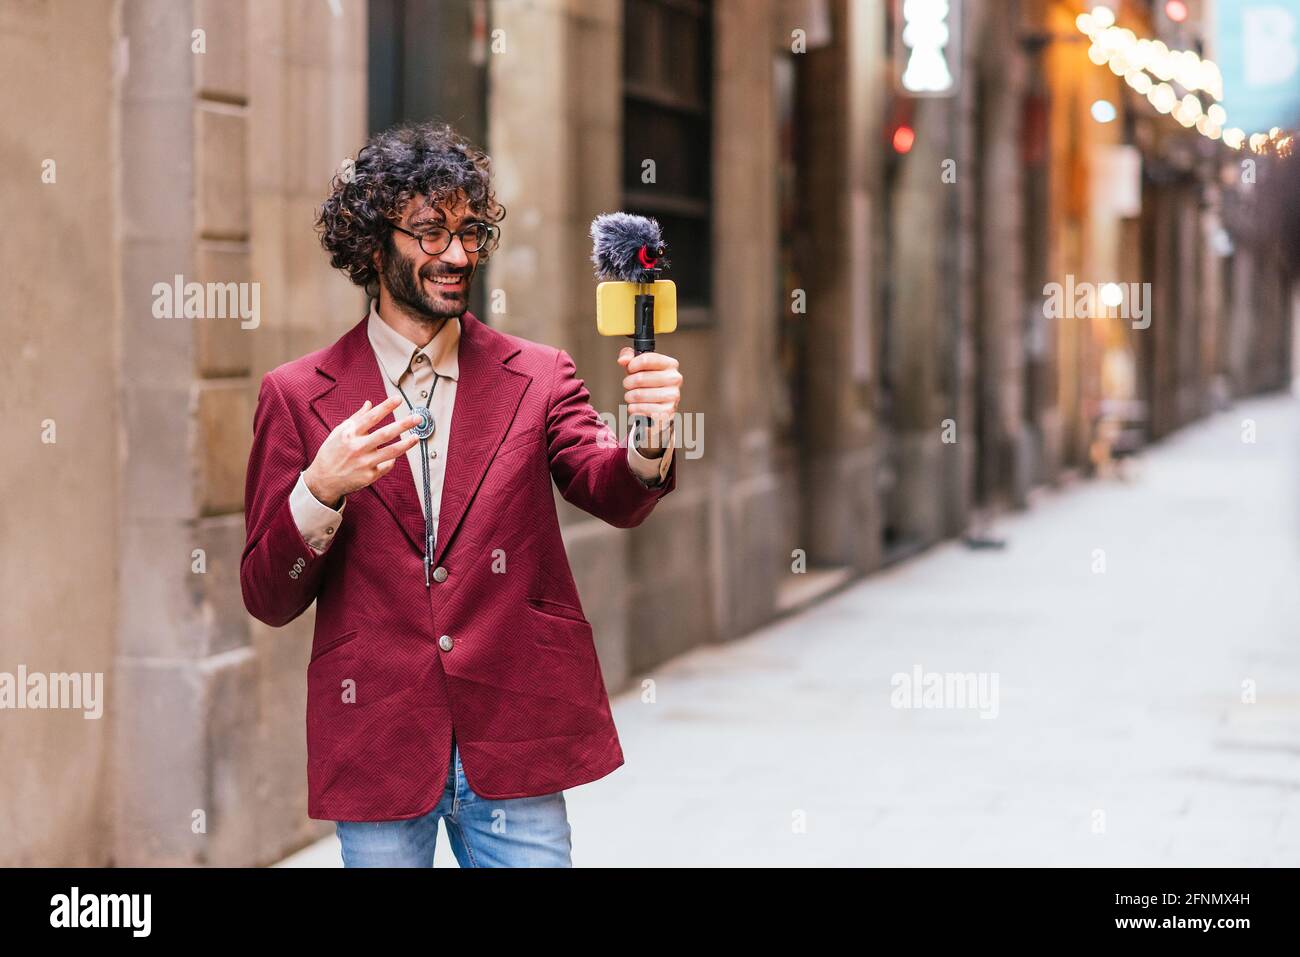 Charmant homme caucasien s'enregistrant dans les rues de Barcelone. Il tient une nacelle avec un téléphone mobile jaune et un microphone. Il est dres Banque D'Images